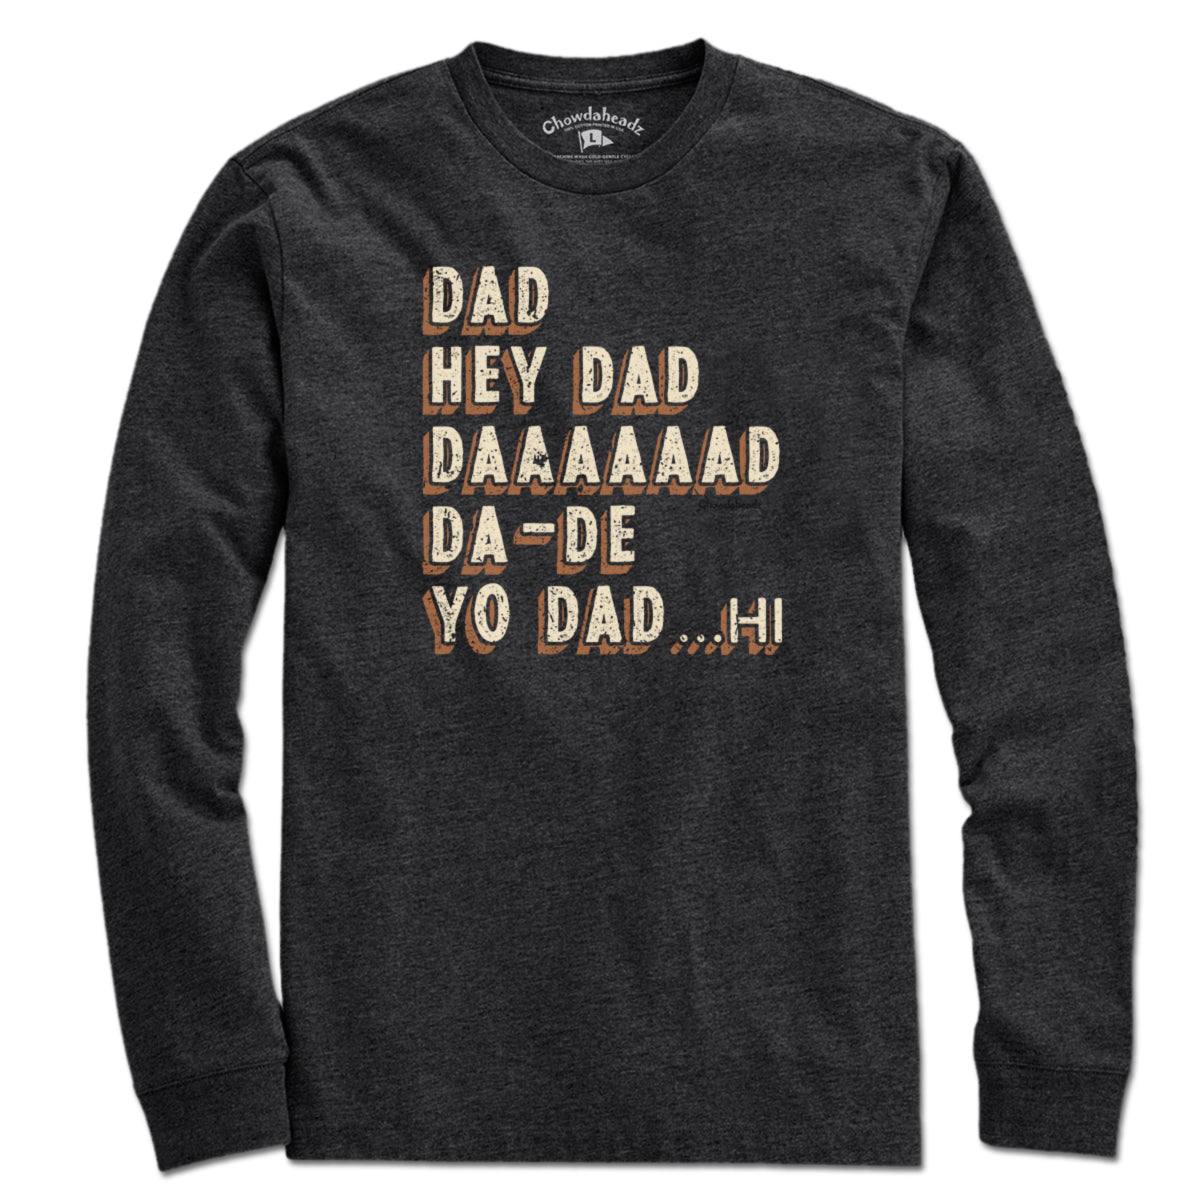 Hey Dad... T-Shirt - Chowdaheadz